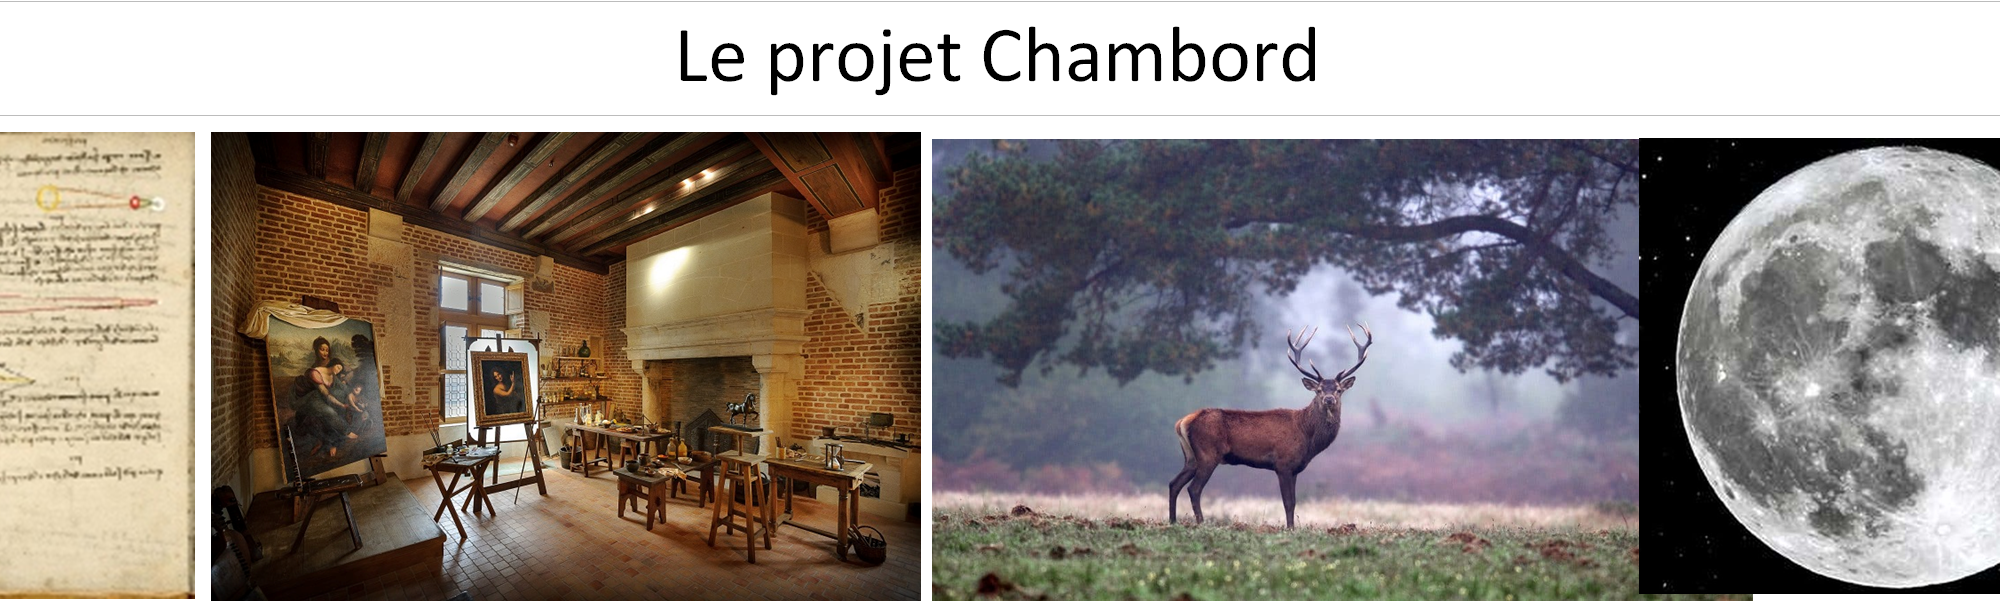 Le projet Chambord